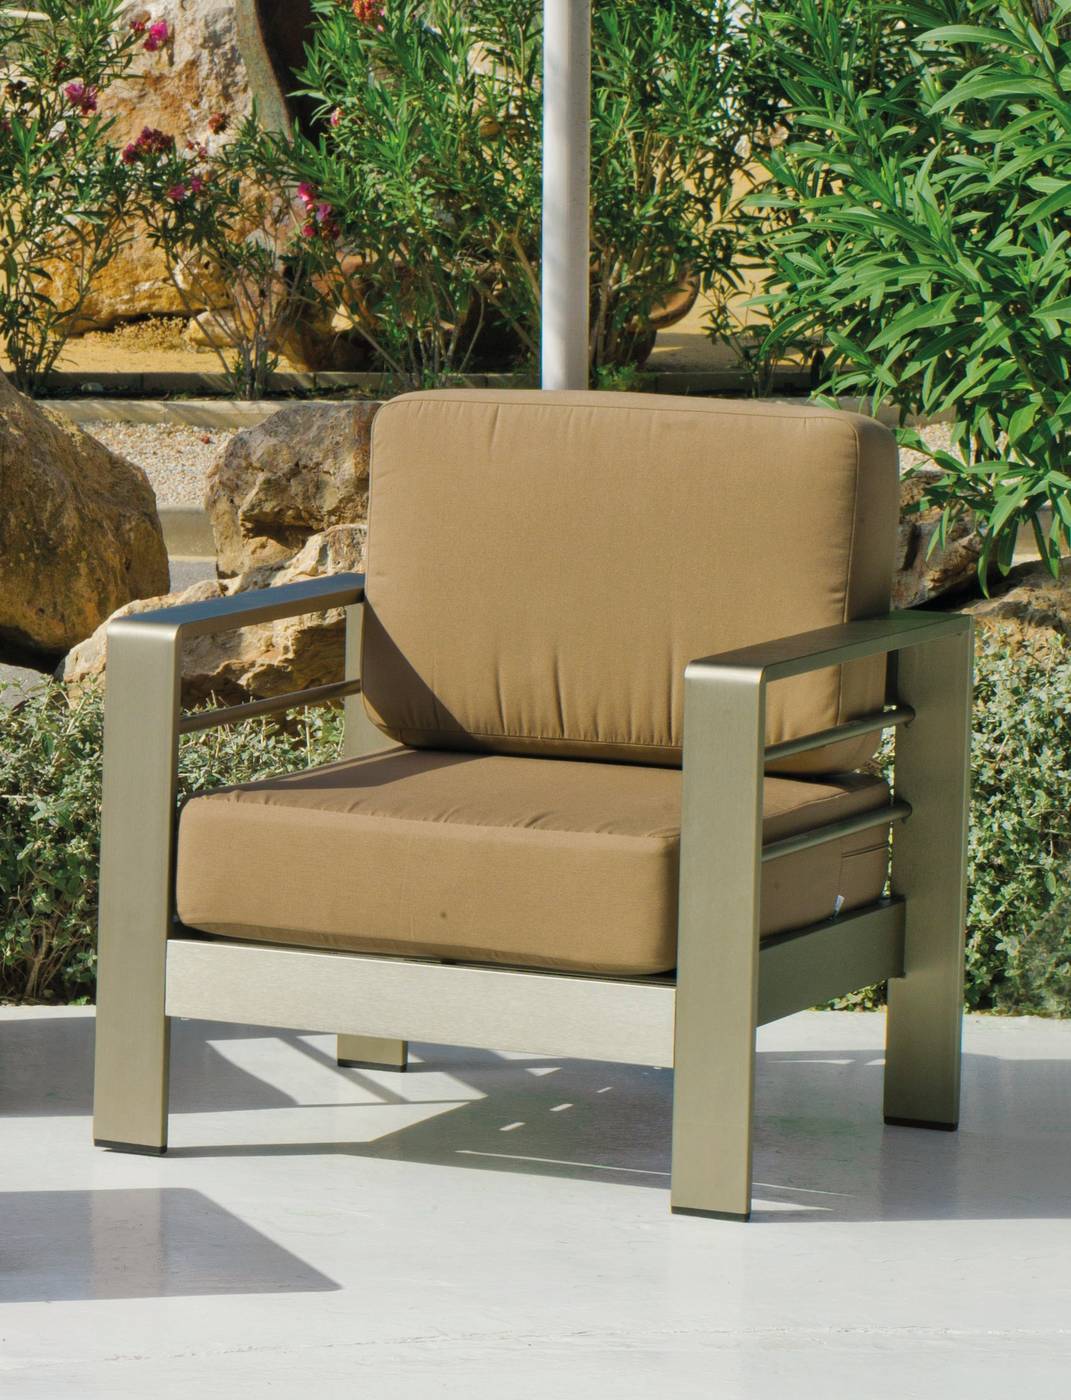 Set Aluminio Louvre-7 - Conjunto de aluminio para jardín: 1 sofá de 2 plazas + 2 sillones + 1 mesa de centro + cojines.